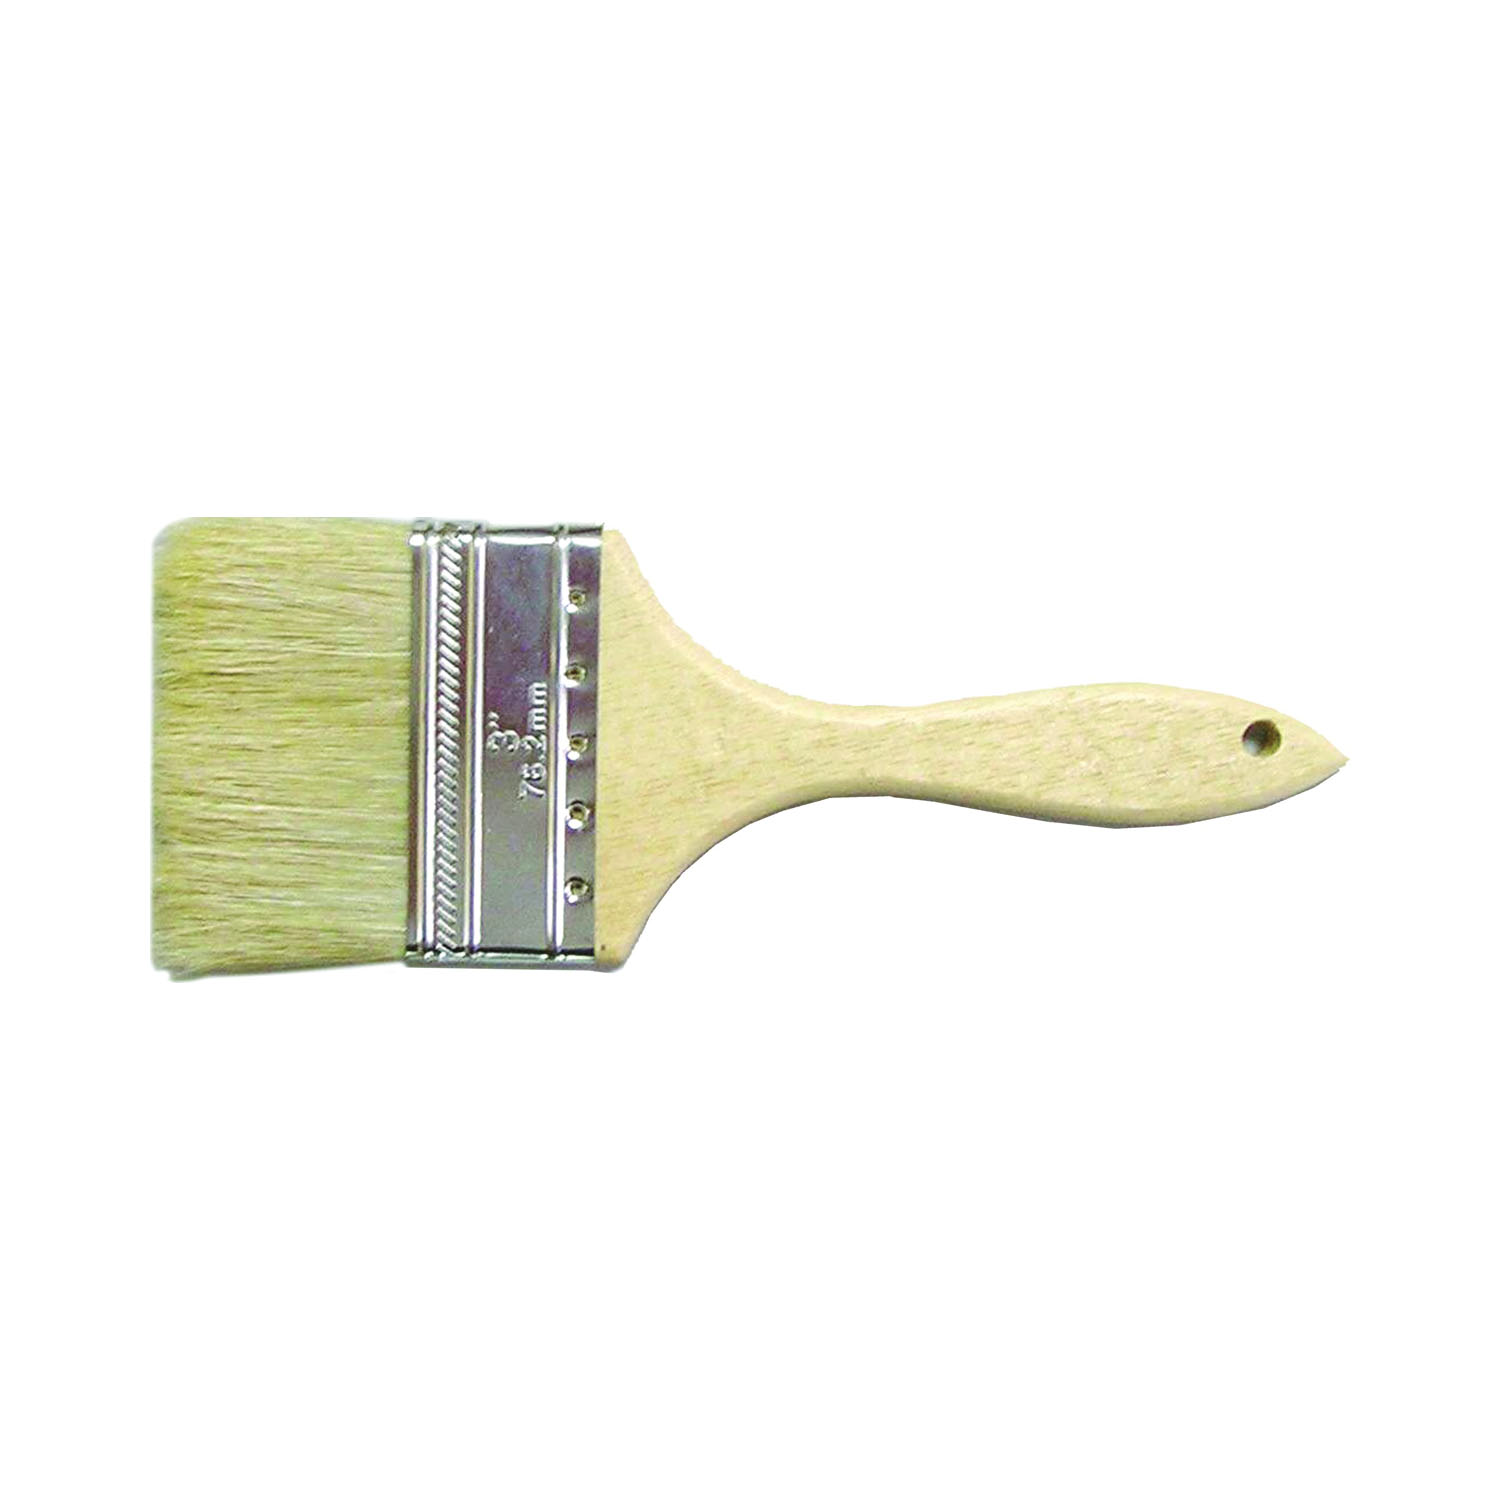 150030 Chip Paint Brush, Plain-Grip Handle